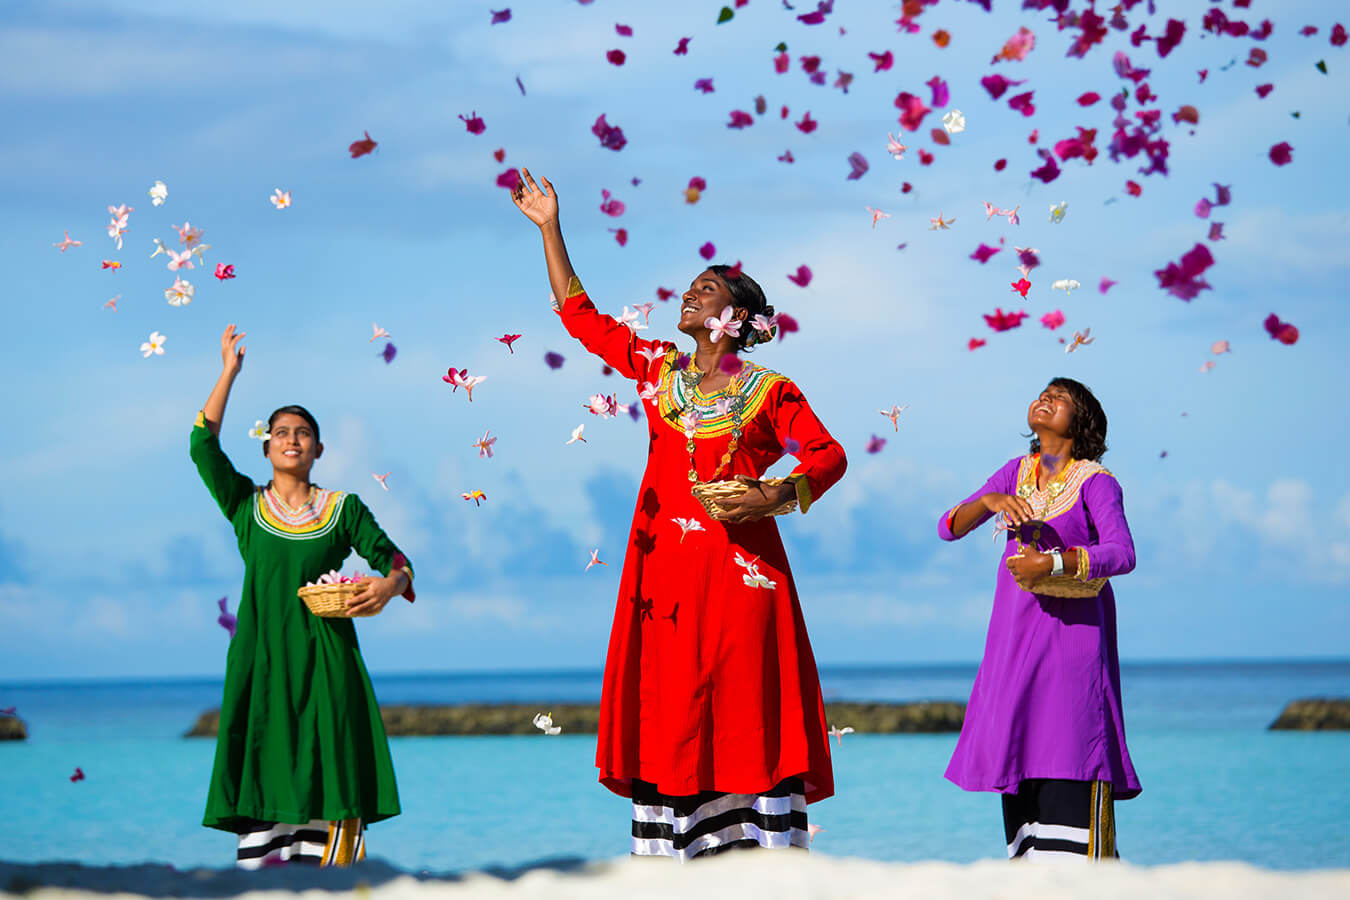 Jours fériés et festivals aux Maldives : signification, dates et faits intéressants